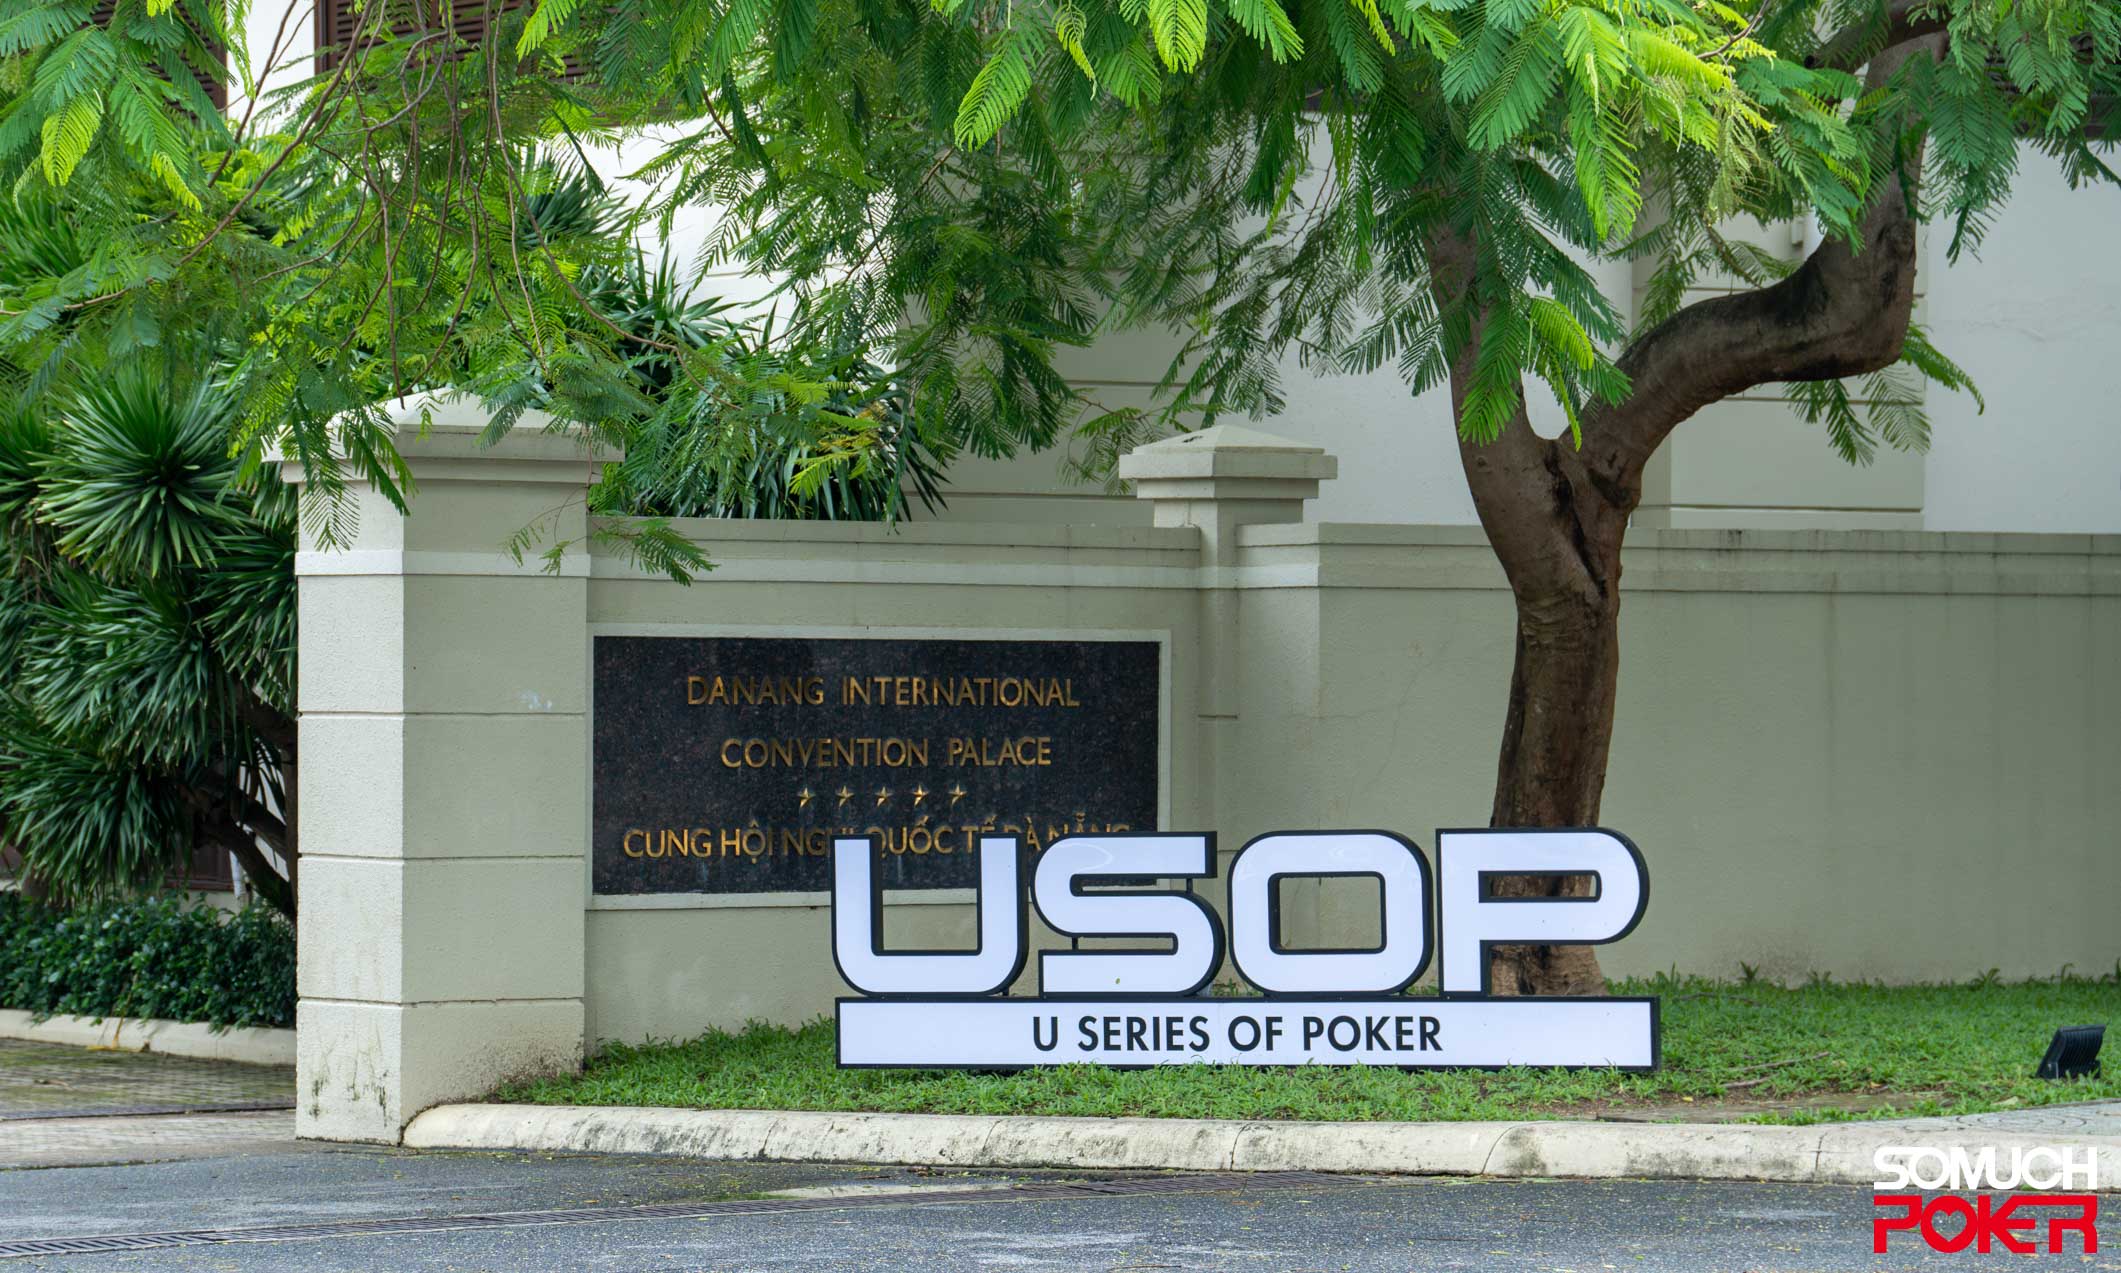 Cards in the air, USOP Danang unveiled! - Furama Resort, November 17 to 27